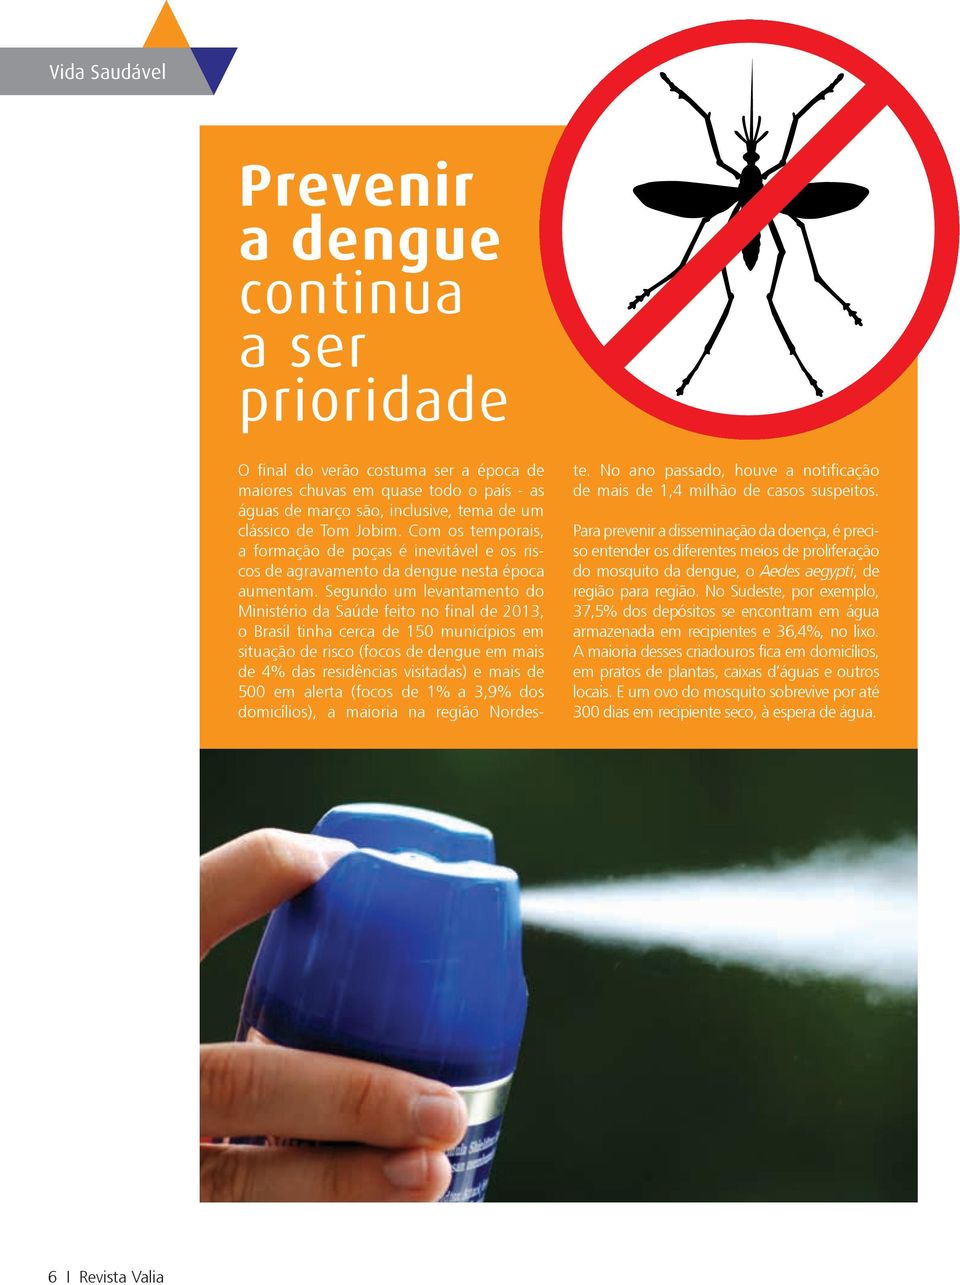 Segundo um levantamento do Ministério da Saúde feito no final de 2013, o Brasil tinha cerca de 150 municípios em situação de risco (focos de dengue em mais de 4% das residências visitadas) e mais de